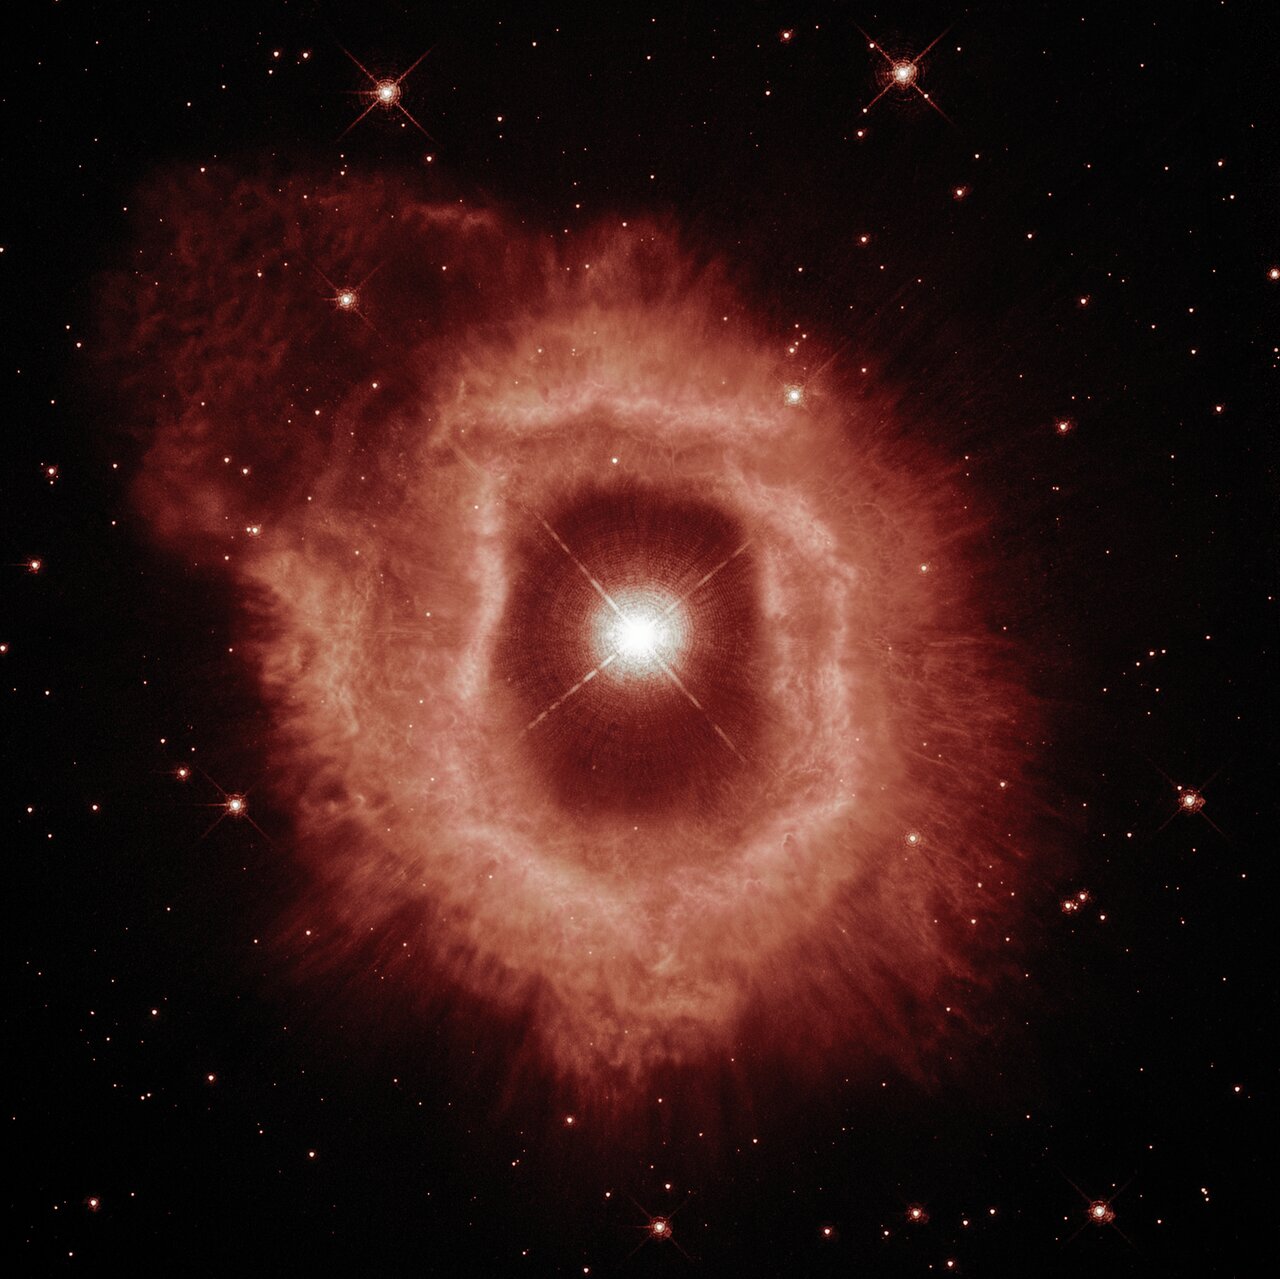 過去の爆発で放出されたガスと塵の星雲に囲まれた巨大星「りゅうこつ座AG星」